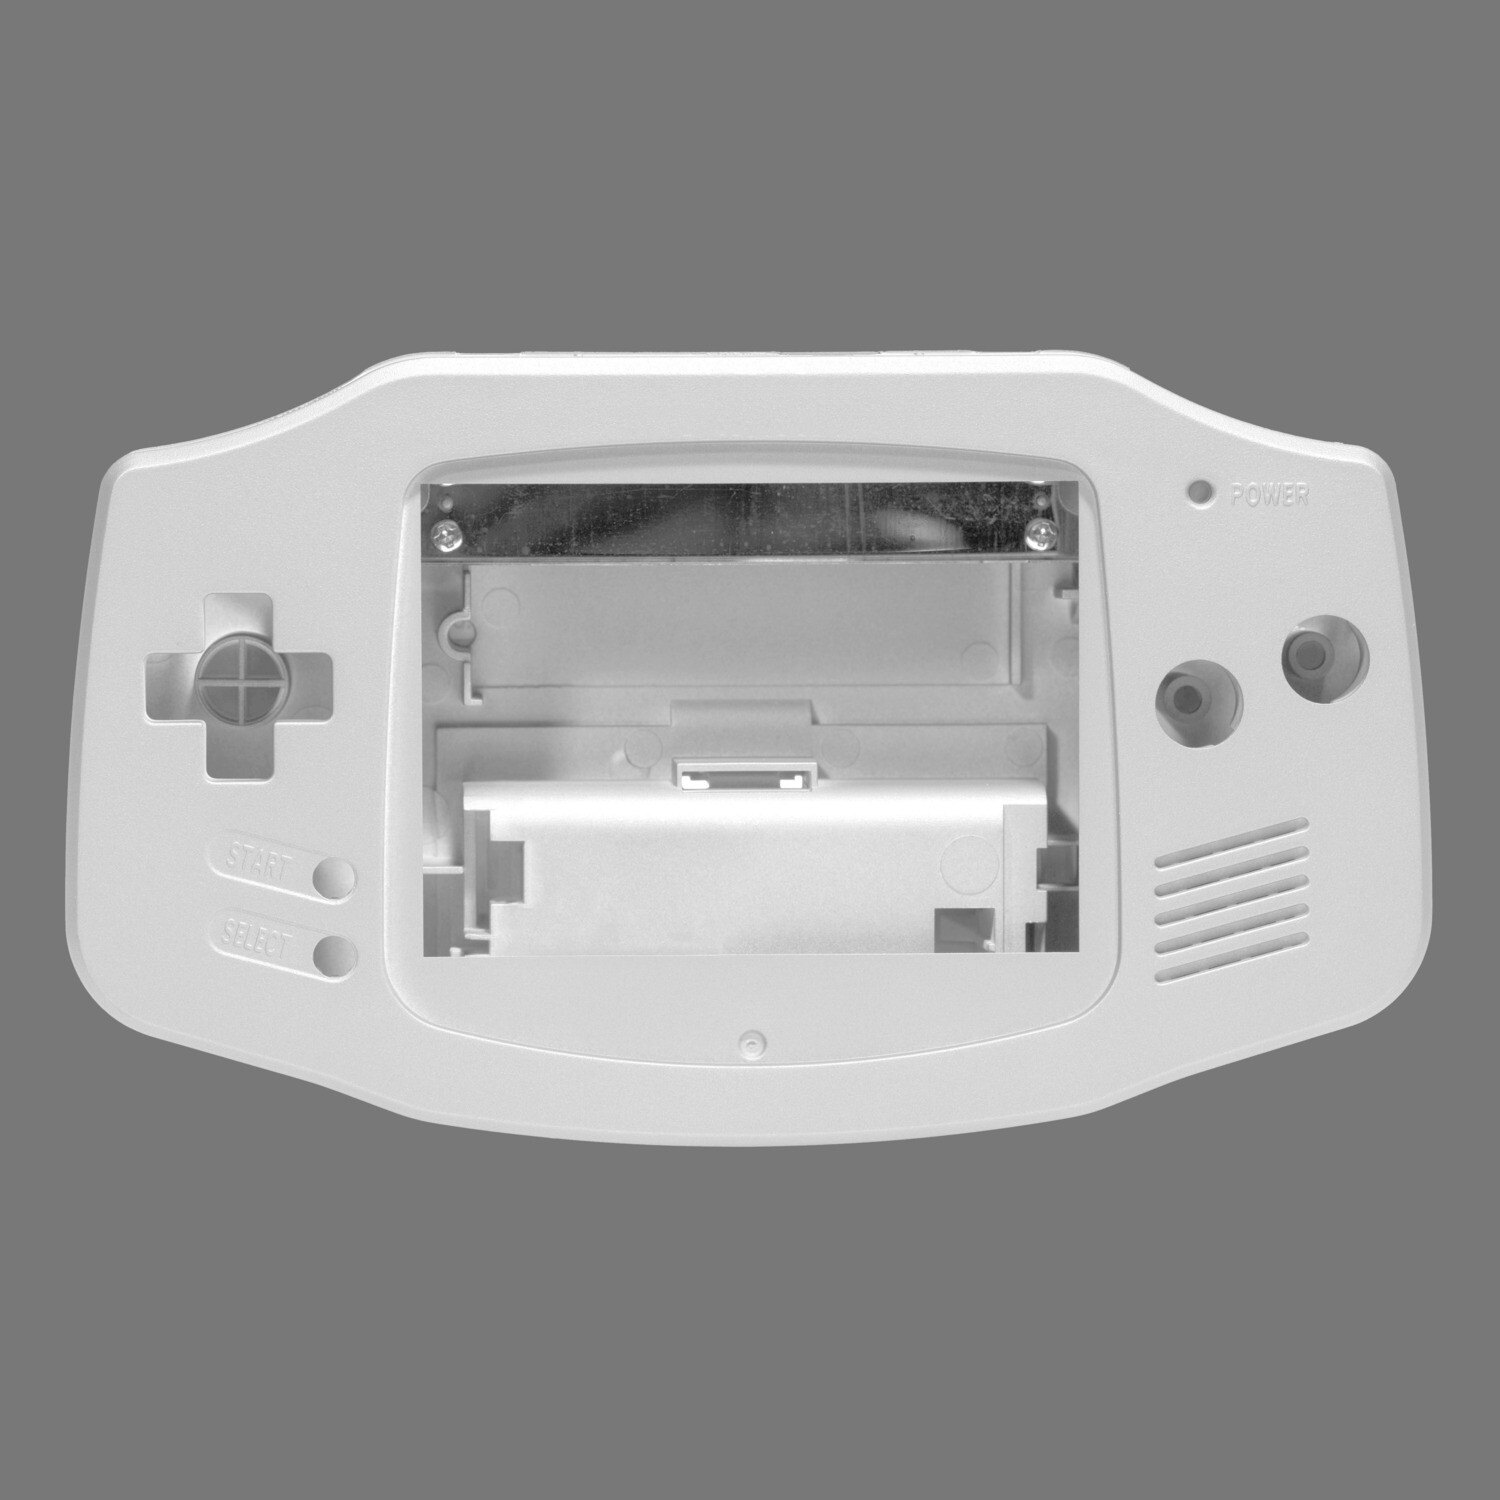 Game Boy Advance Shell (Pearl White)